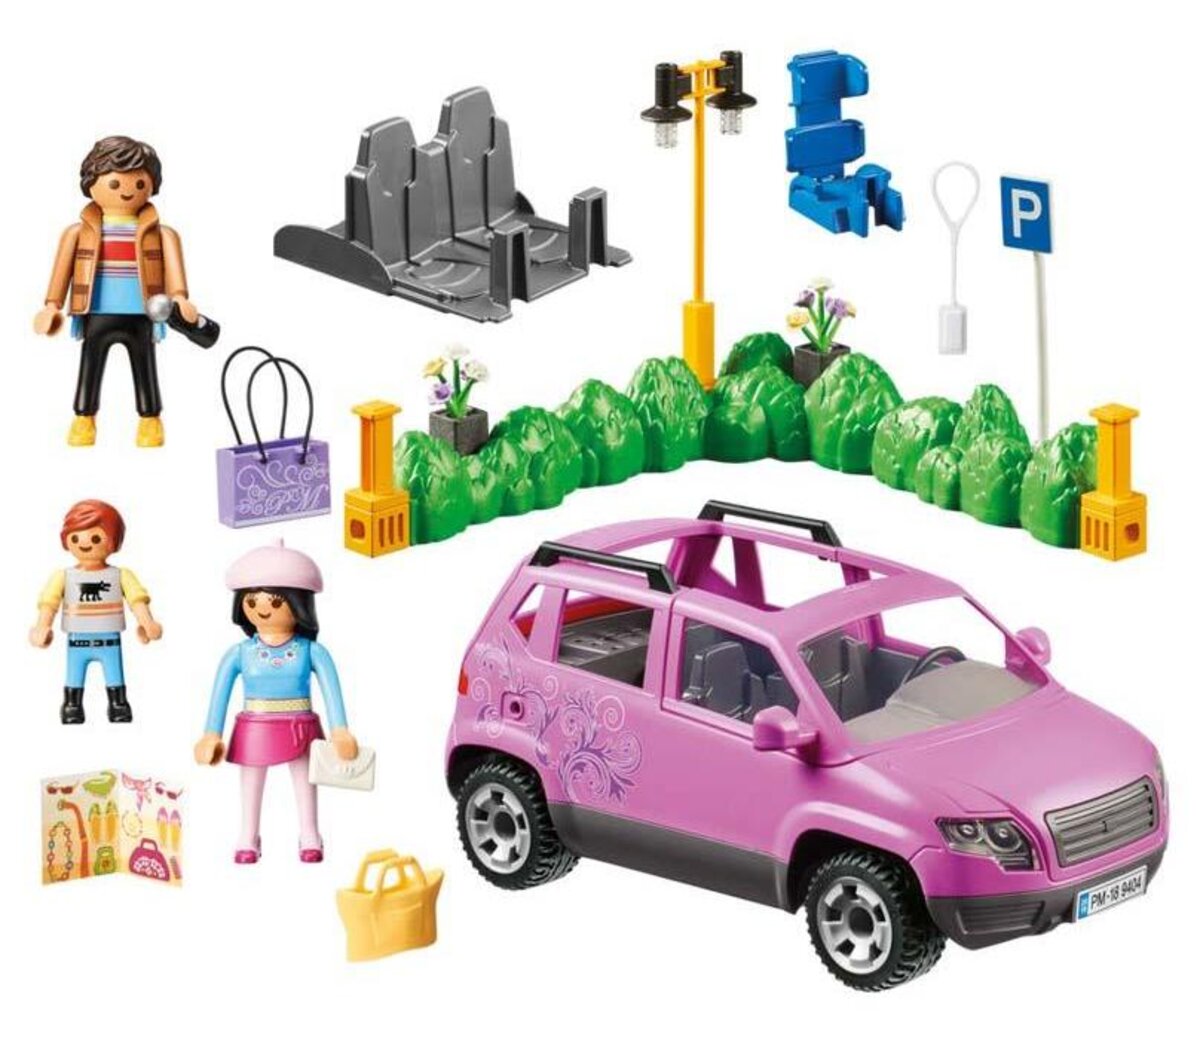 Playmobil City Life Les boutiques 9404 Voiture familiale - Playmobil